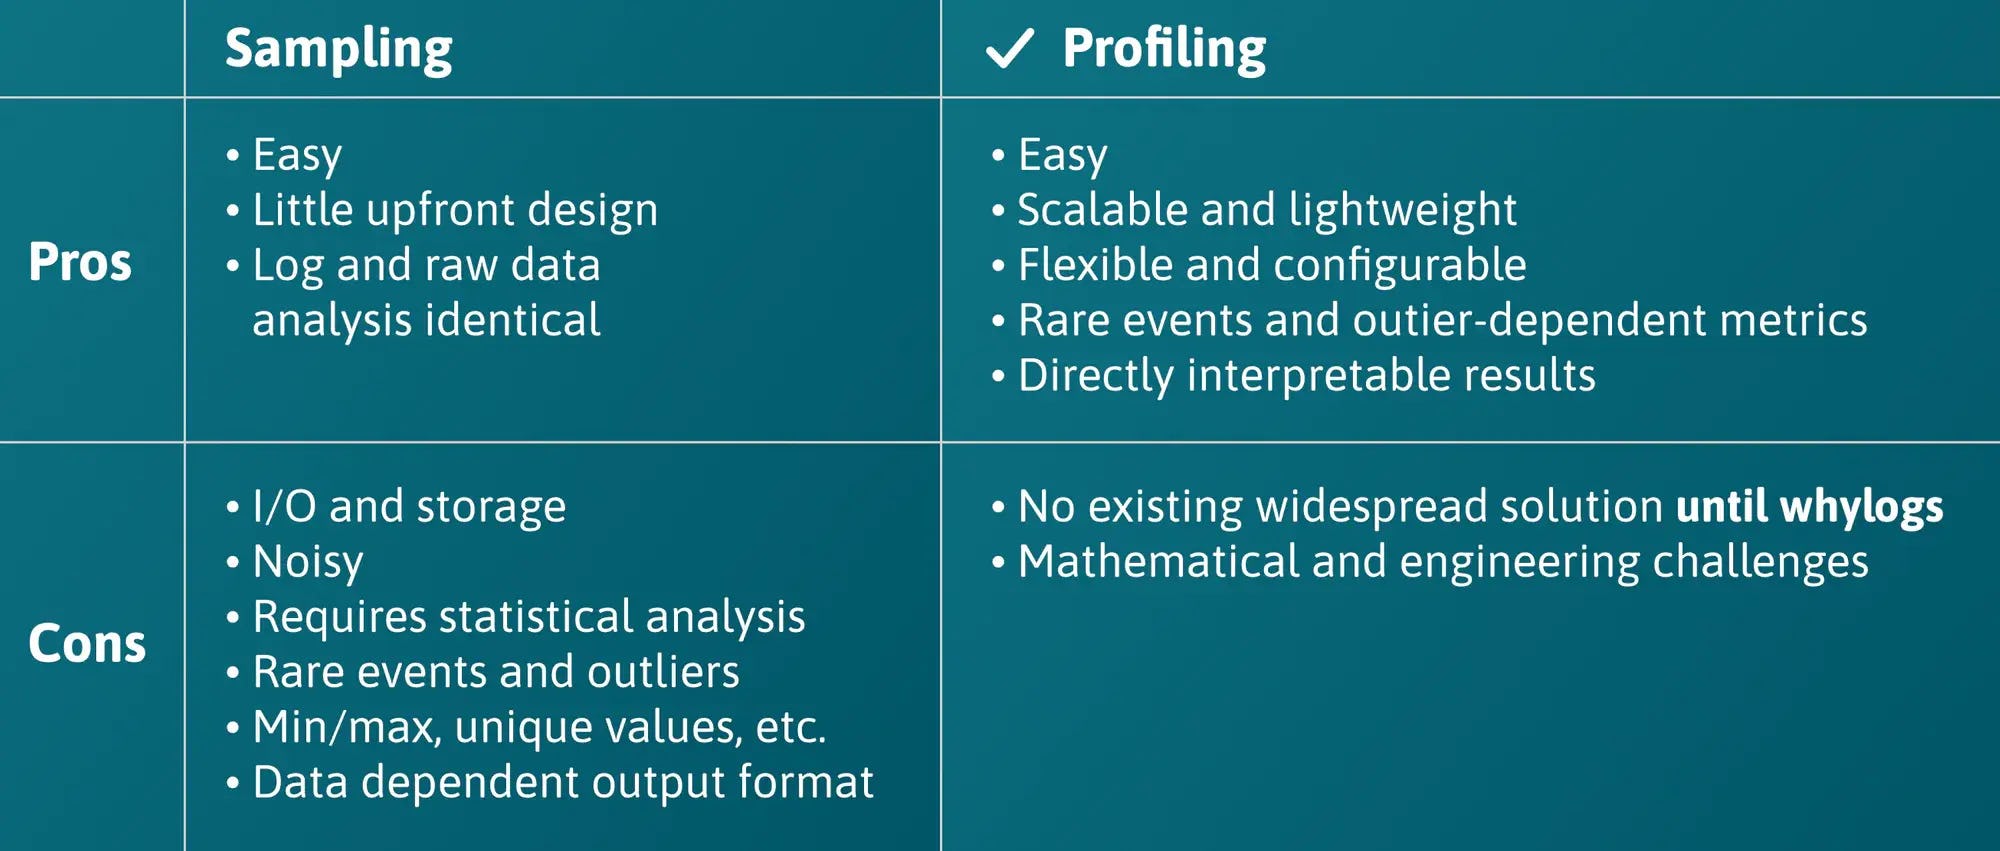 Data Logging: Sampling versus Profiling